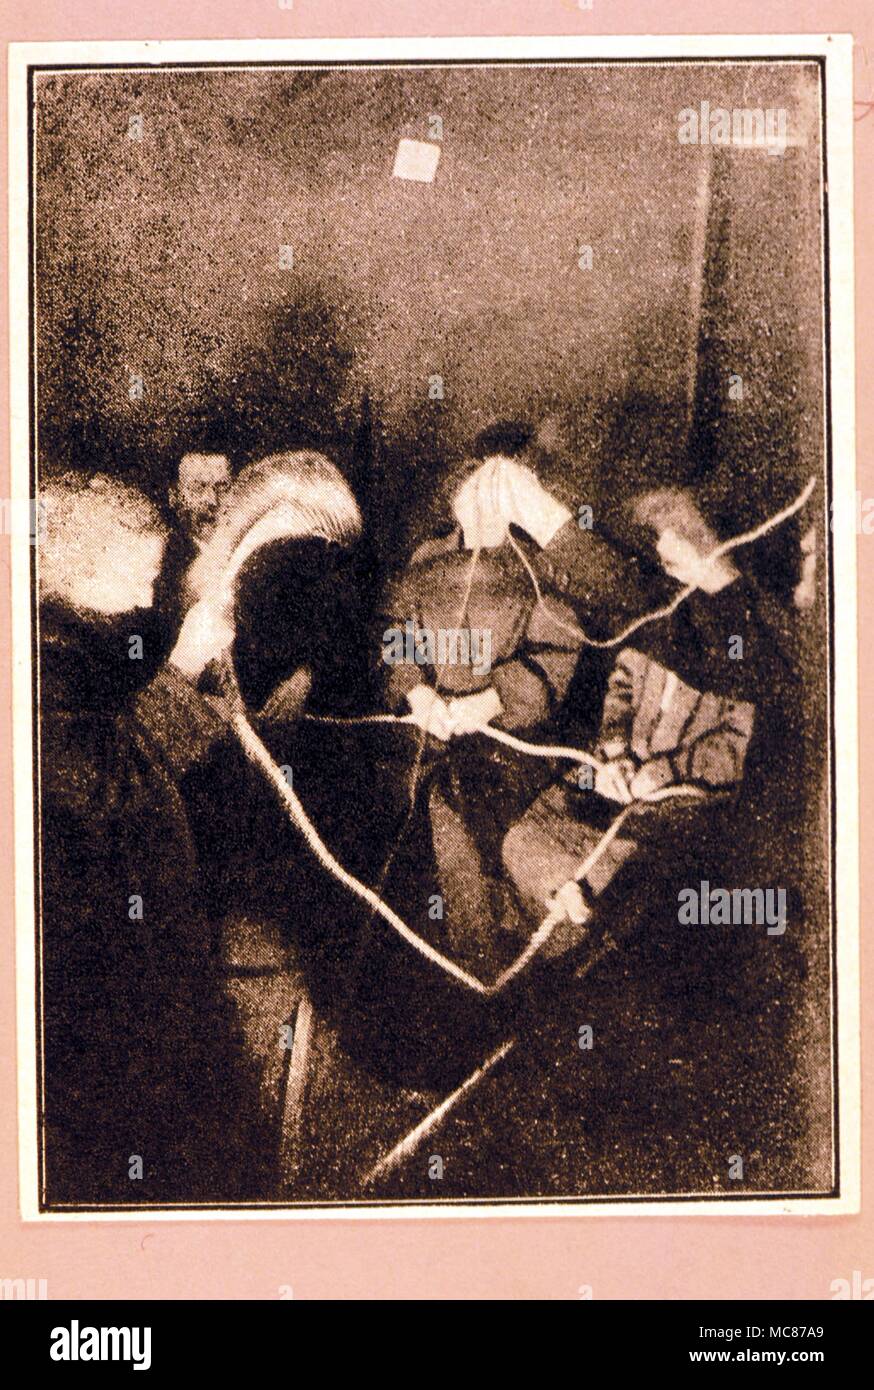 SEANCE - LEVITATION Flash Foto von Warrick-Deane seance des 25. Mai, 1925 - vielleicht den Dramatischsten der Serie. Stockfoto